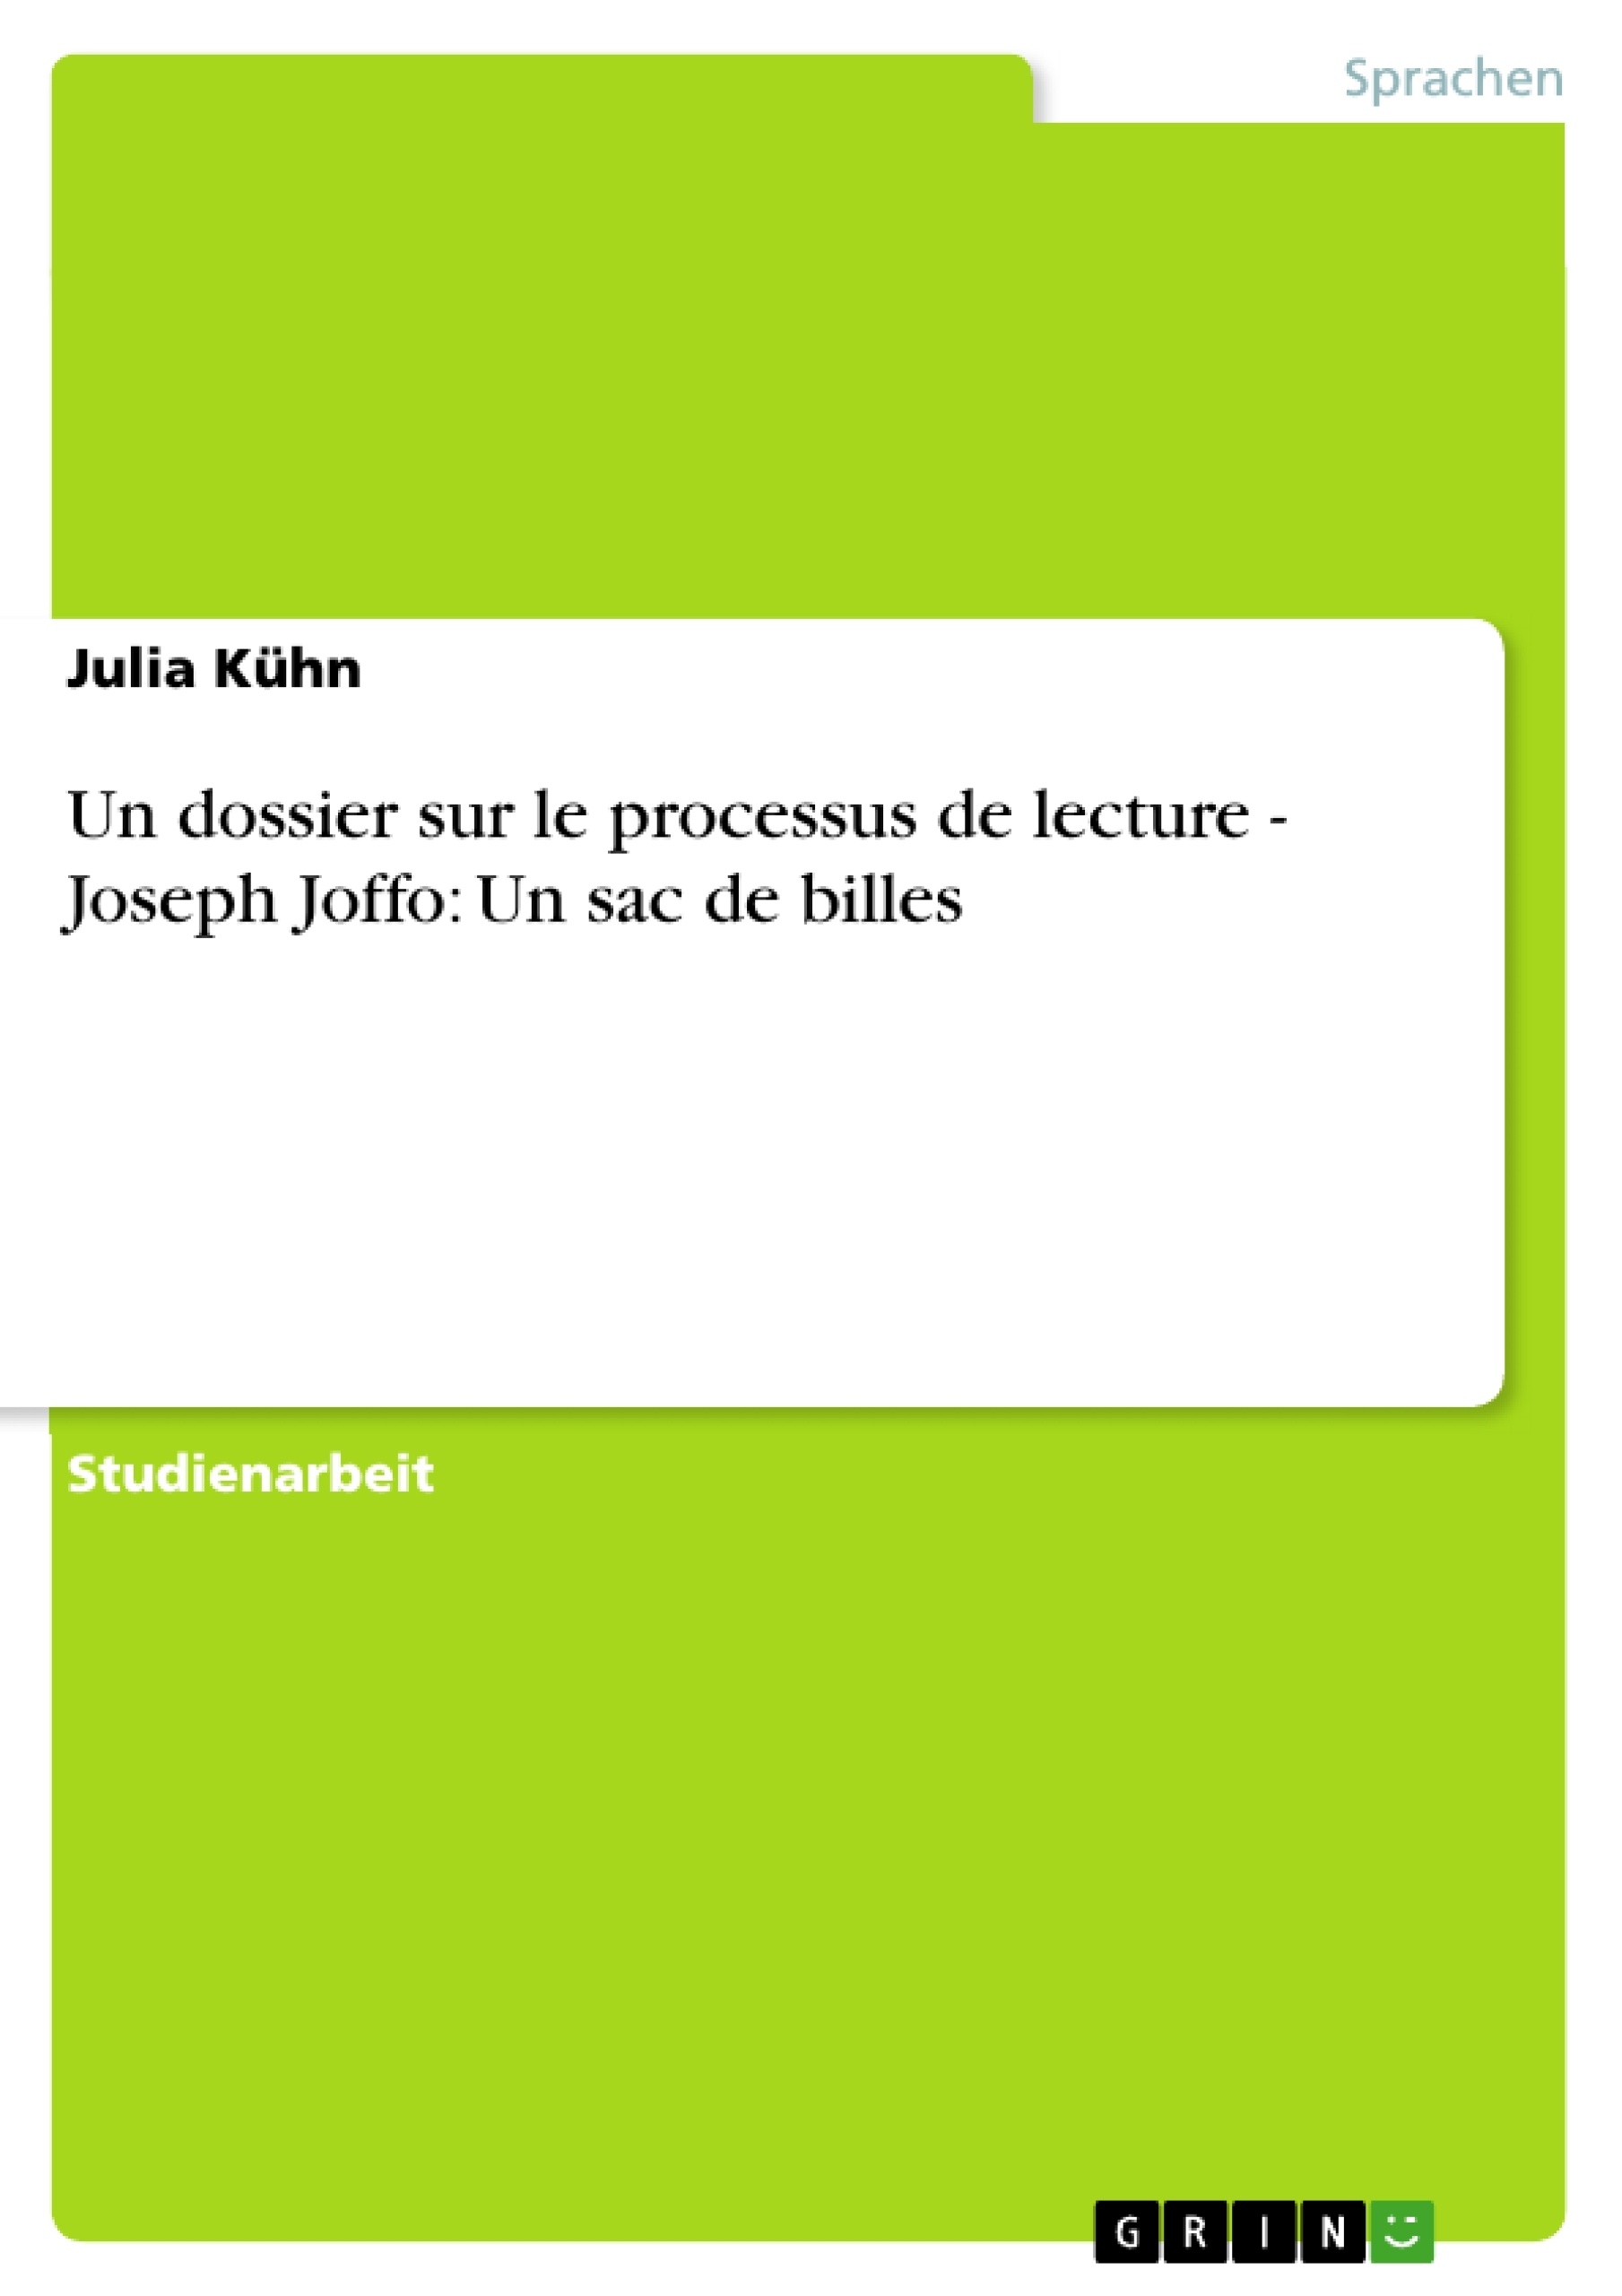 Título: Un dossier sur le processus de lecture - Joseph Joffo: Un sac de billes